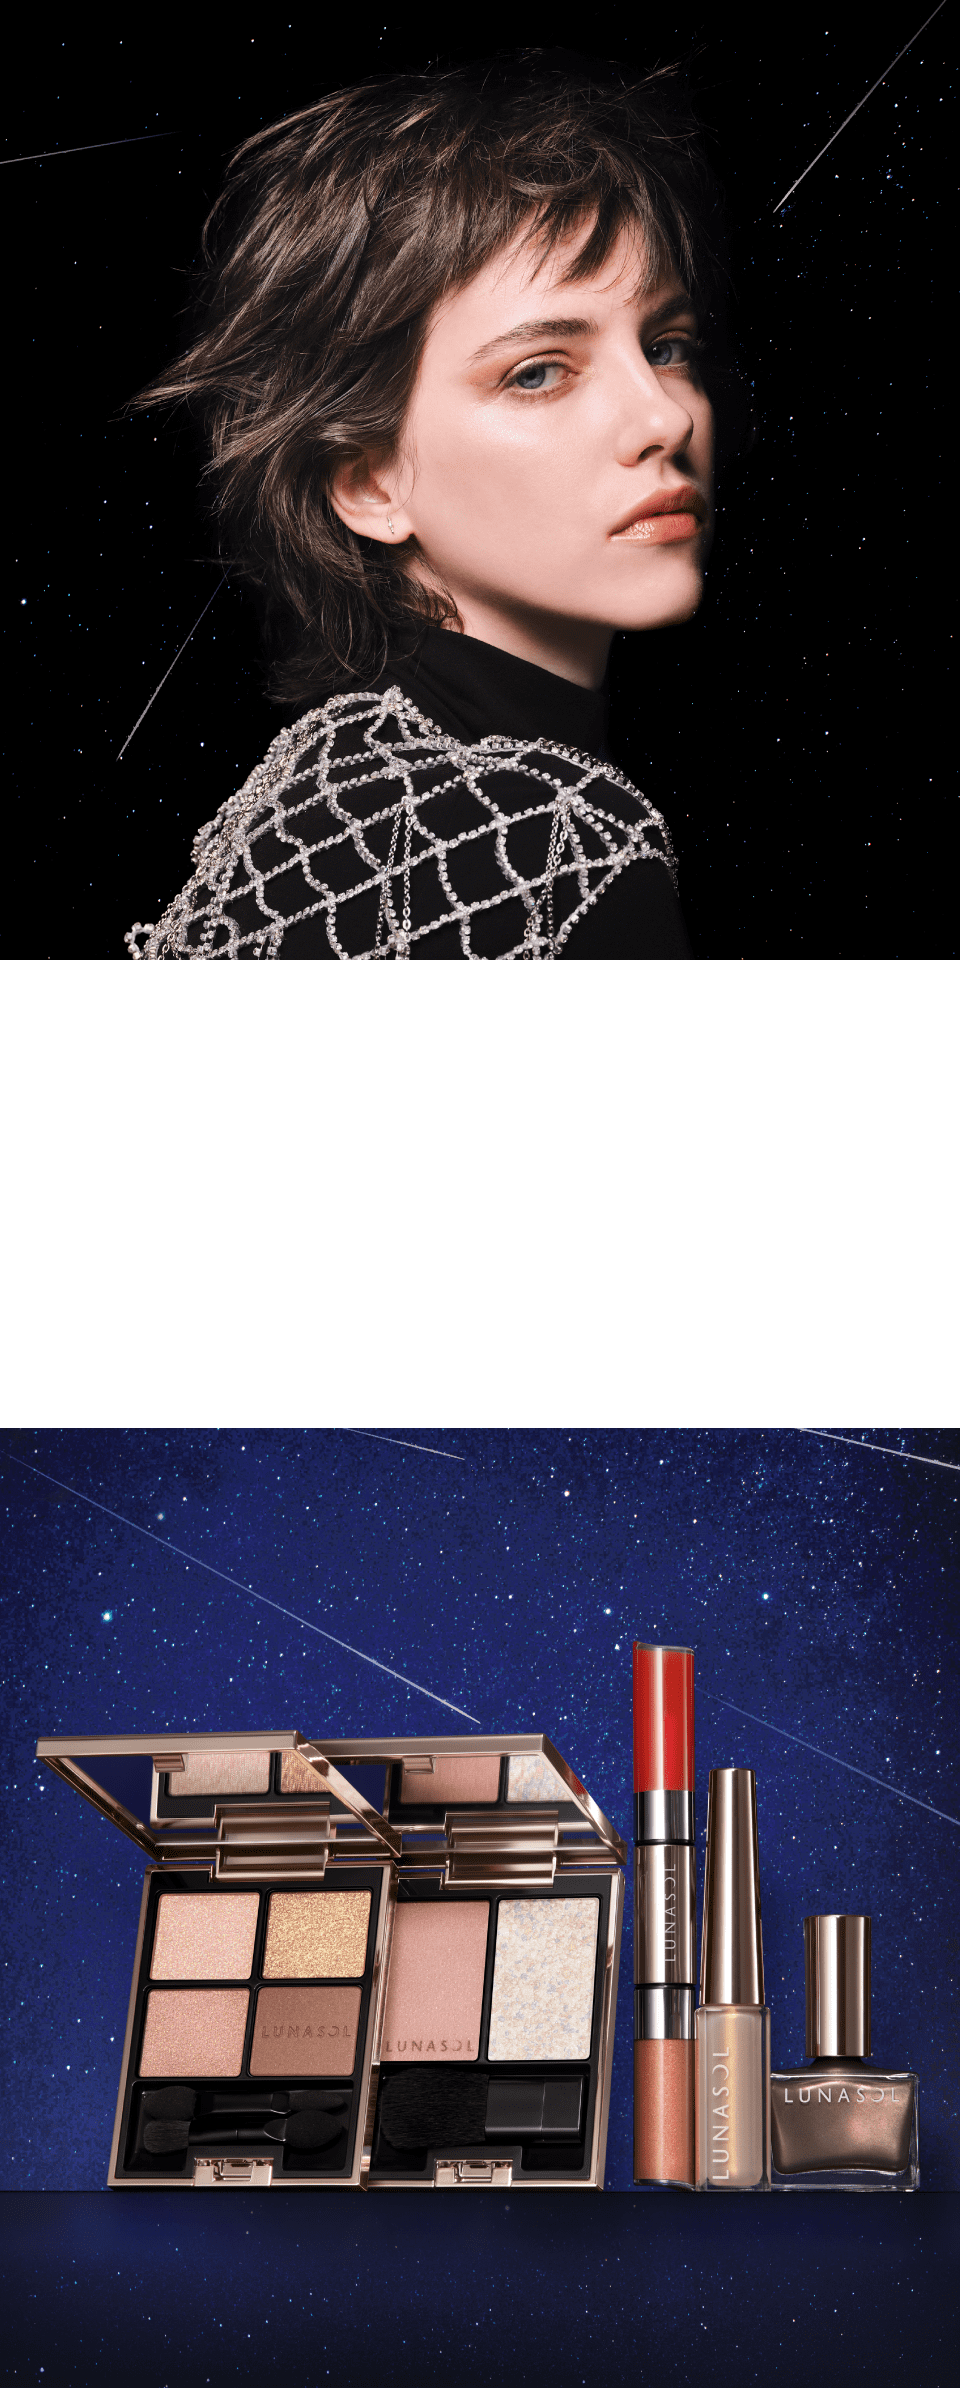 Meteor shower